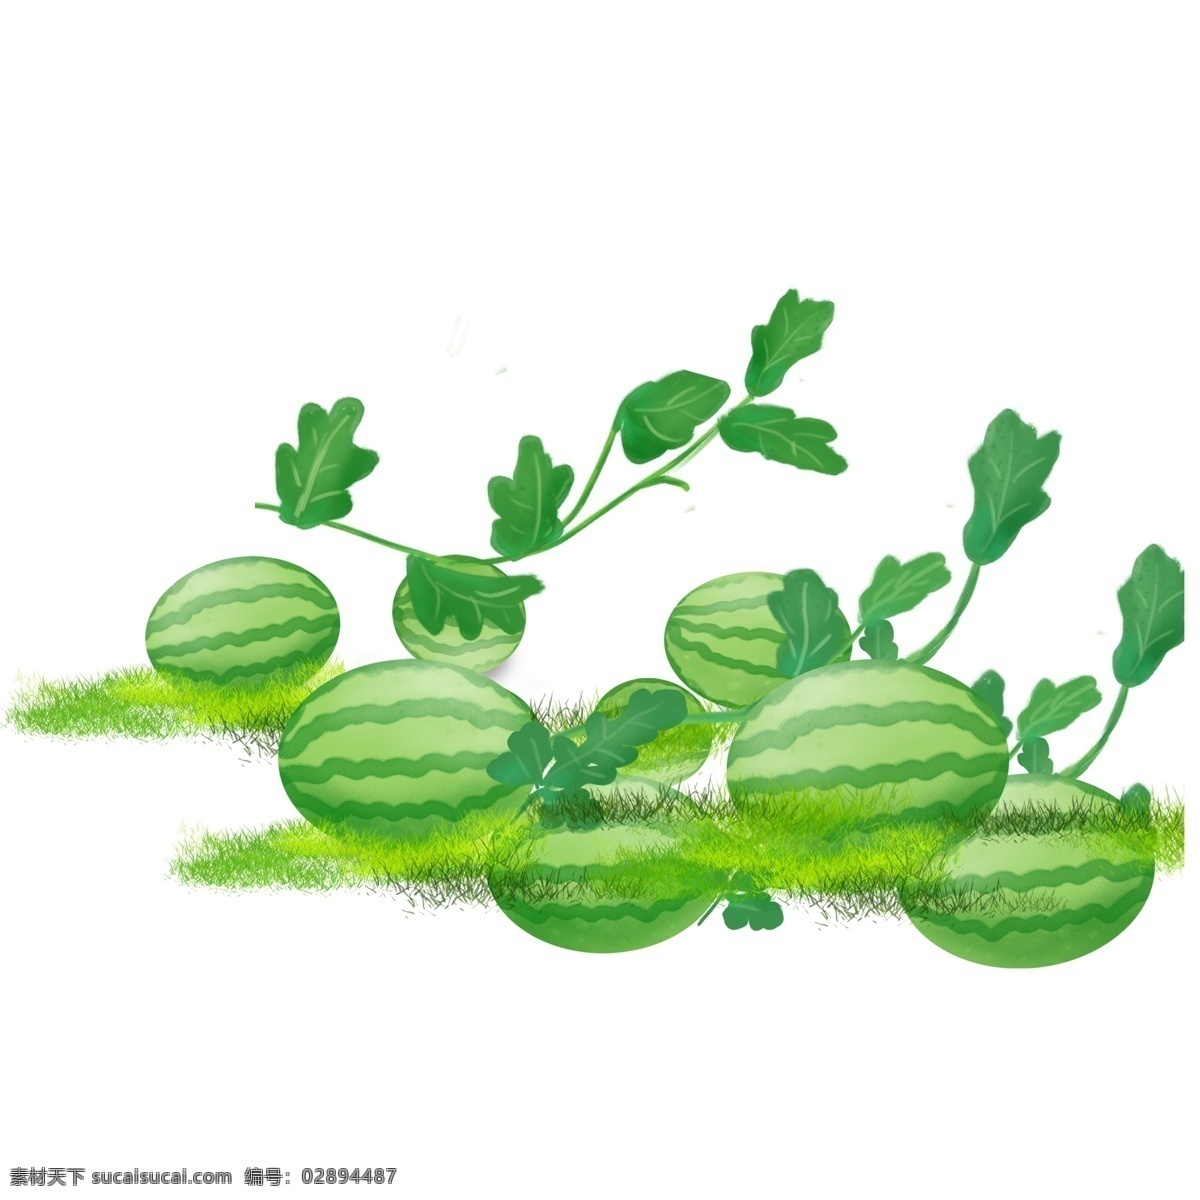 夏日 西瓜 植物 装饰 绿色 卡通 彩色 小清新 创意 手绘 绘画元素 现代 简约 图案